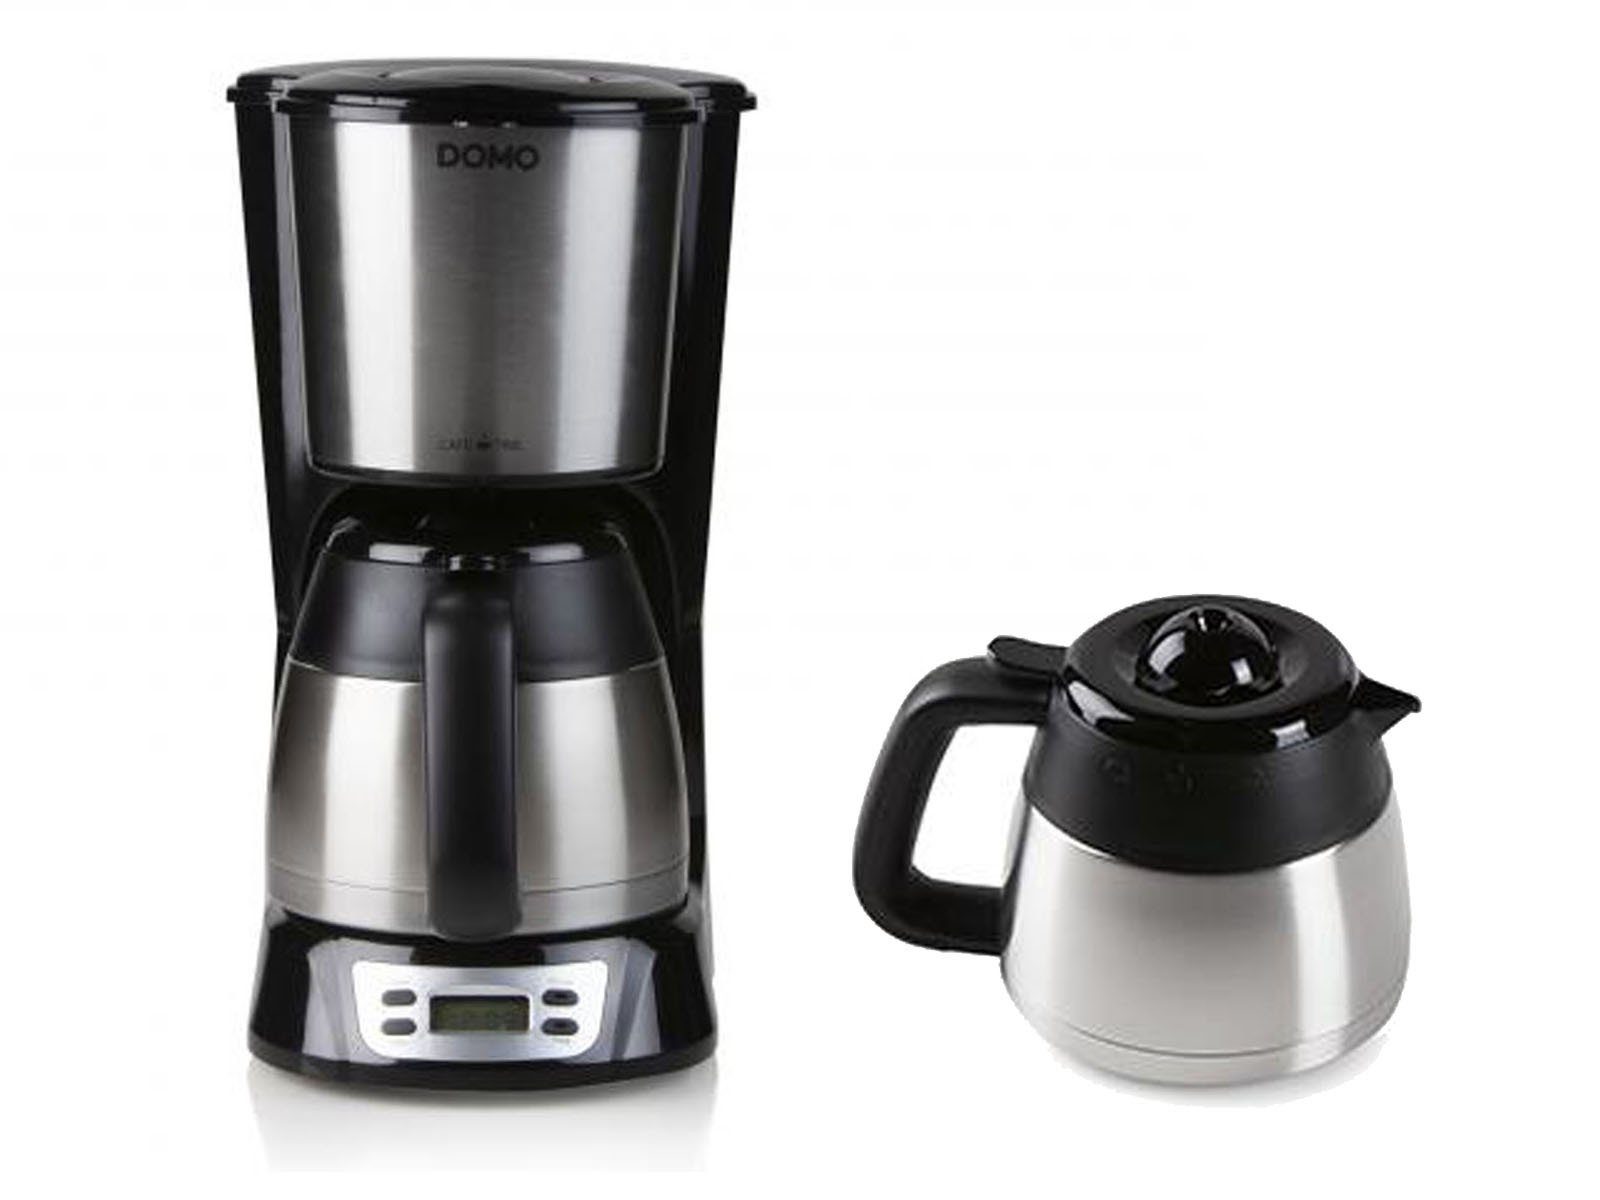 2 Dauerfilter Filter-Kaffee Thermoskannen Filterkaffeemaschine, Domo für Edelstahl Timer, Pulver